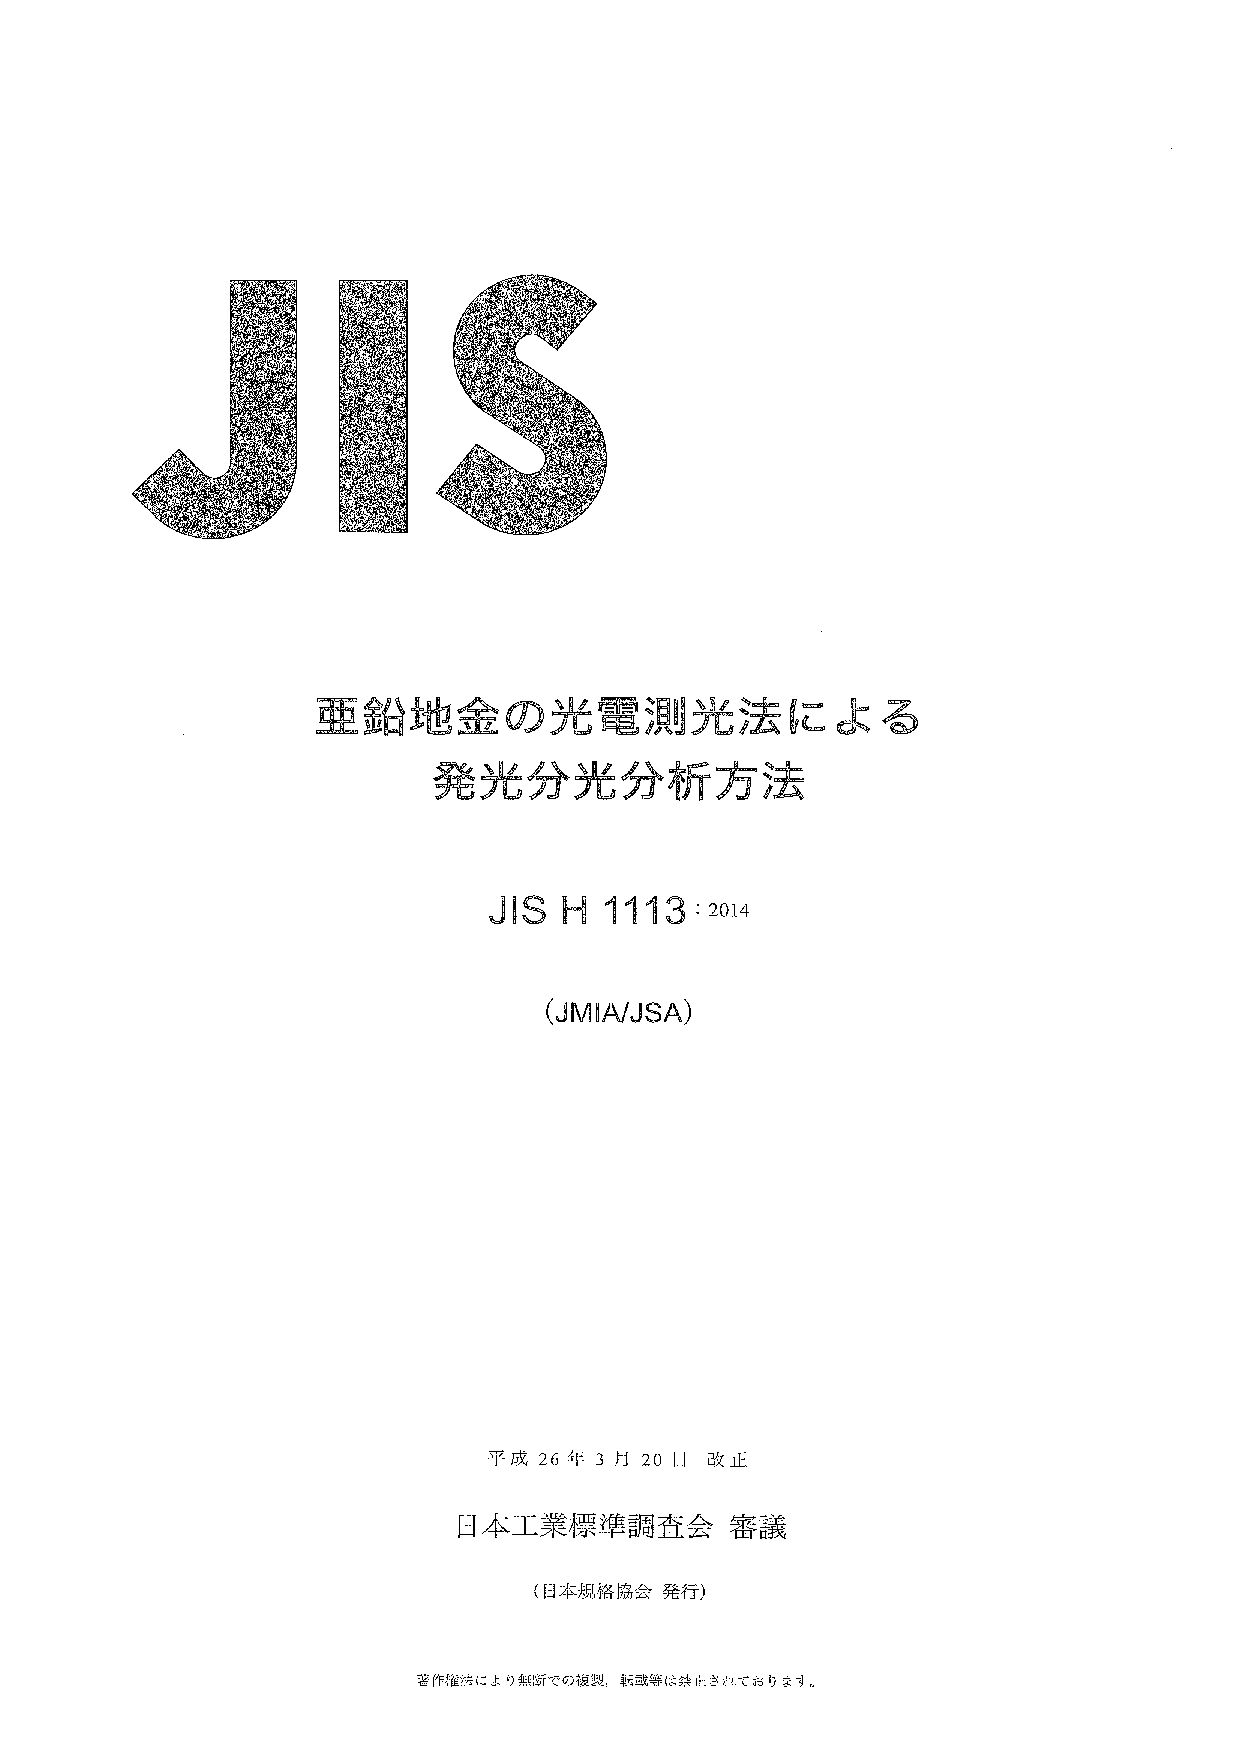 JIS H 1113:2014封面图